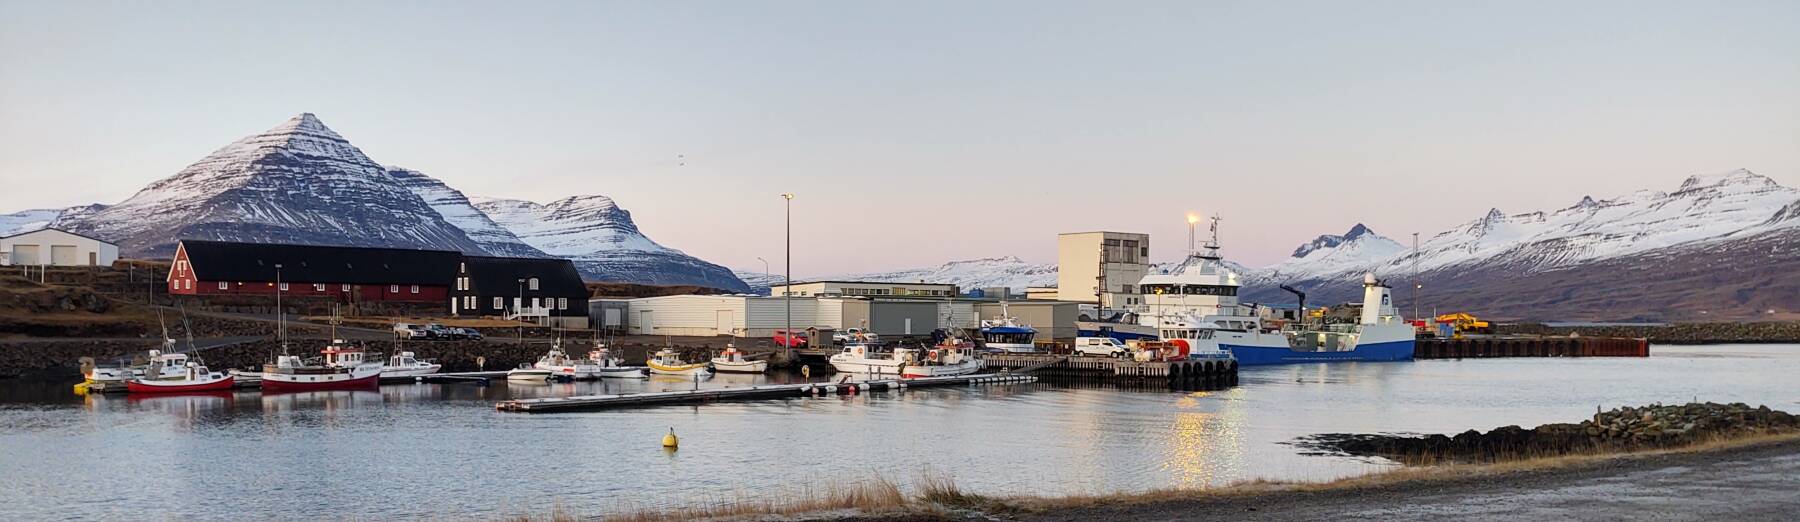 Port at Djúpivogur in Iceland.